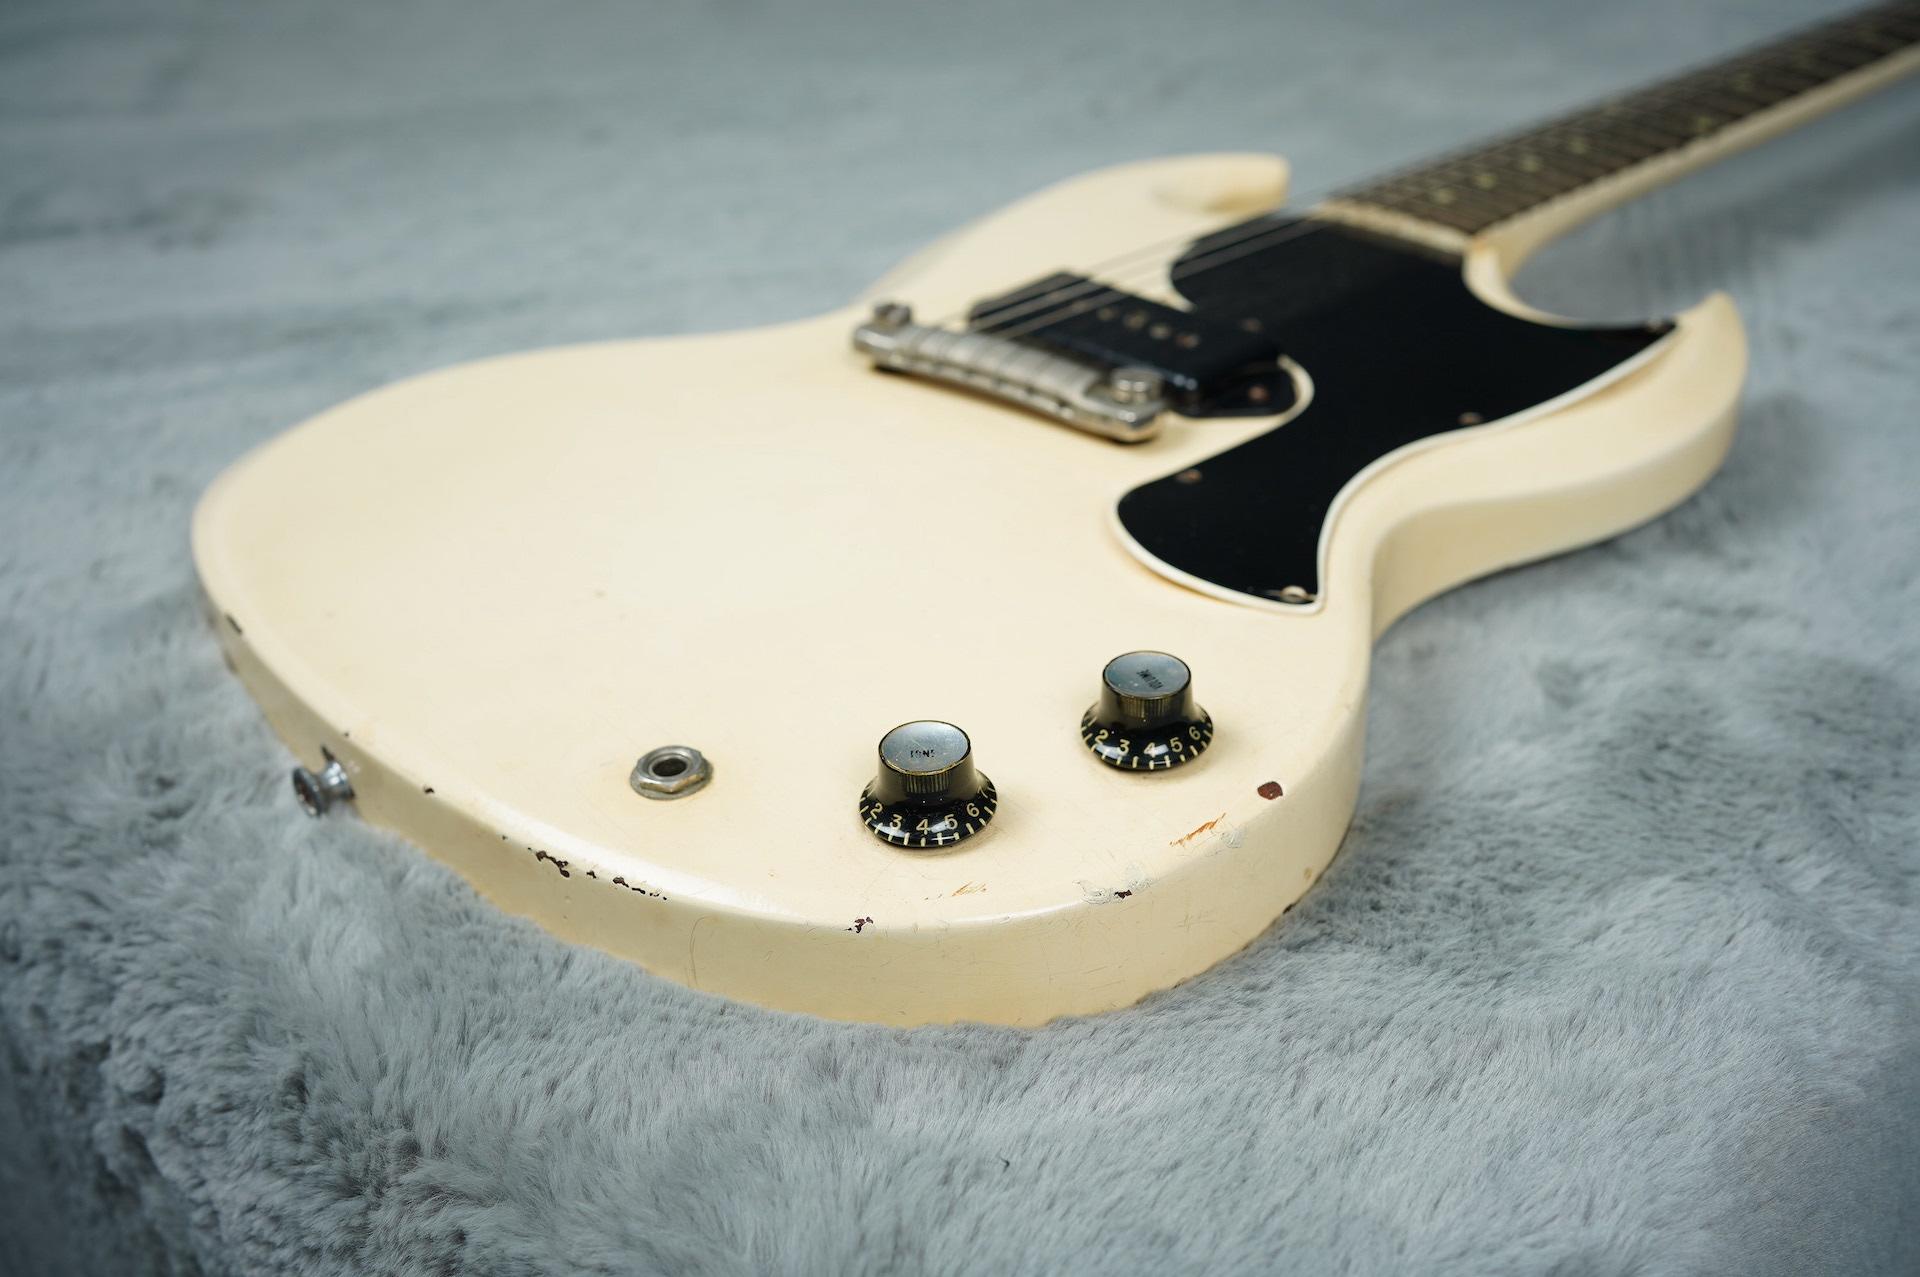 1962 Gibson Les Paul SG Junior white + HSC